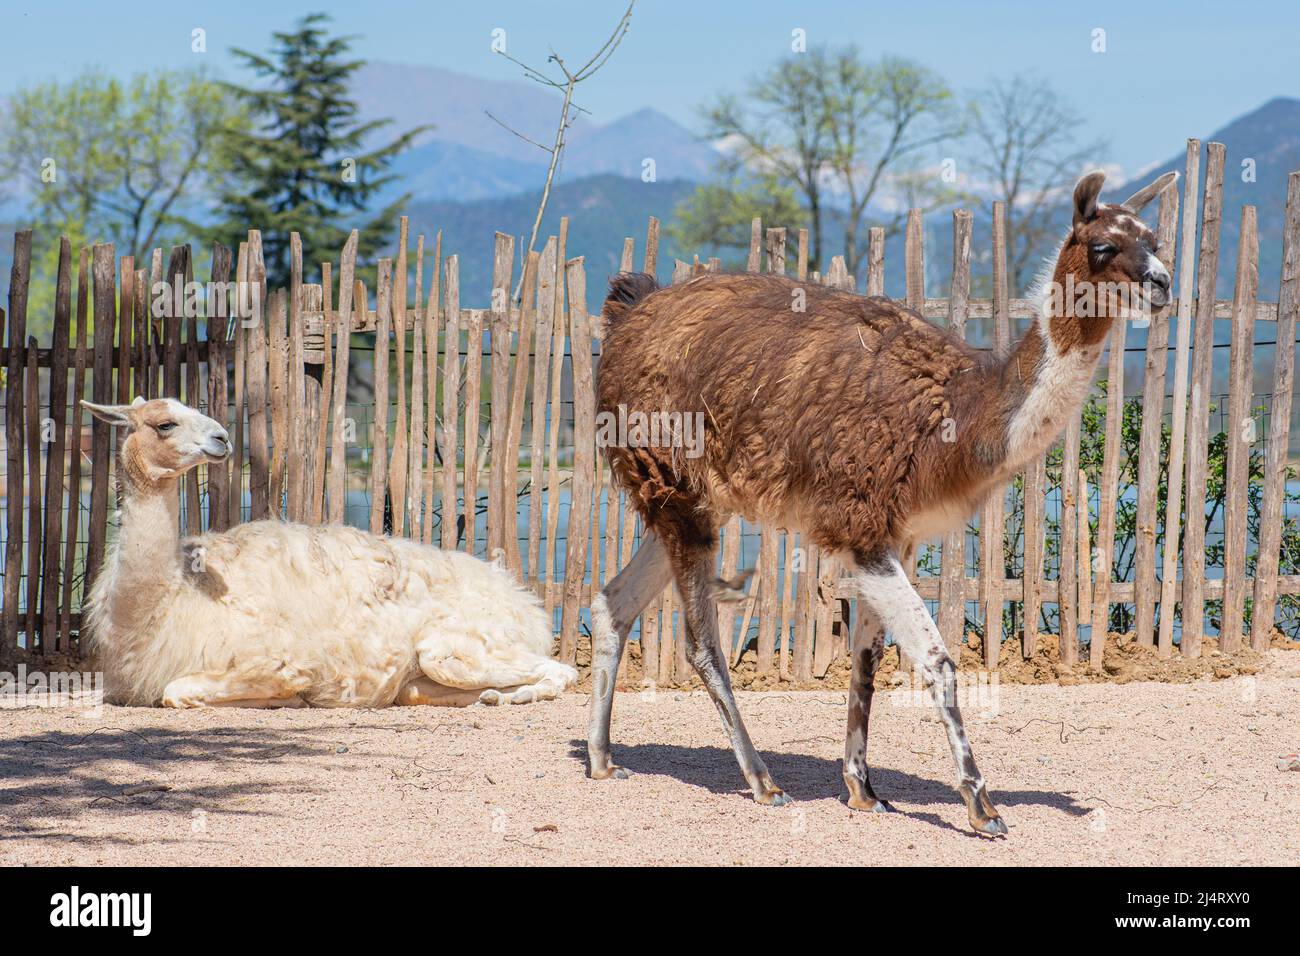 llama, camelide sudamericana addomesticata, ampiamente utilizzata come animale da carne e impacco dalle culture andine fin dall'era precolombiana in una fattoria Foto Stock